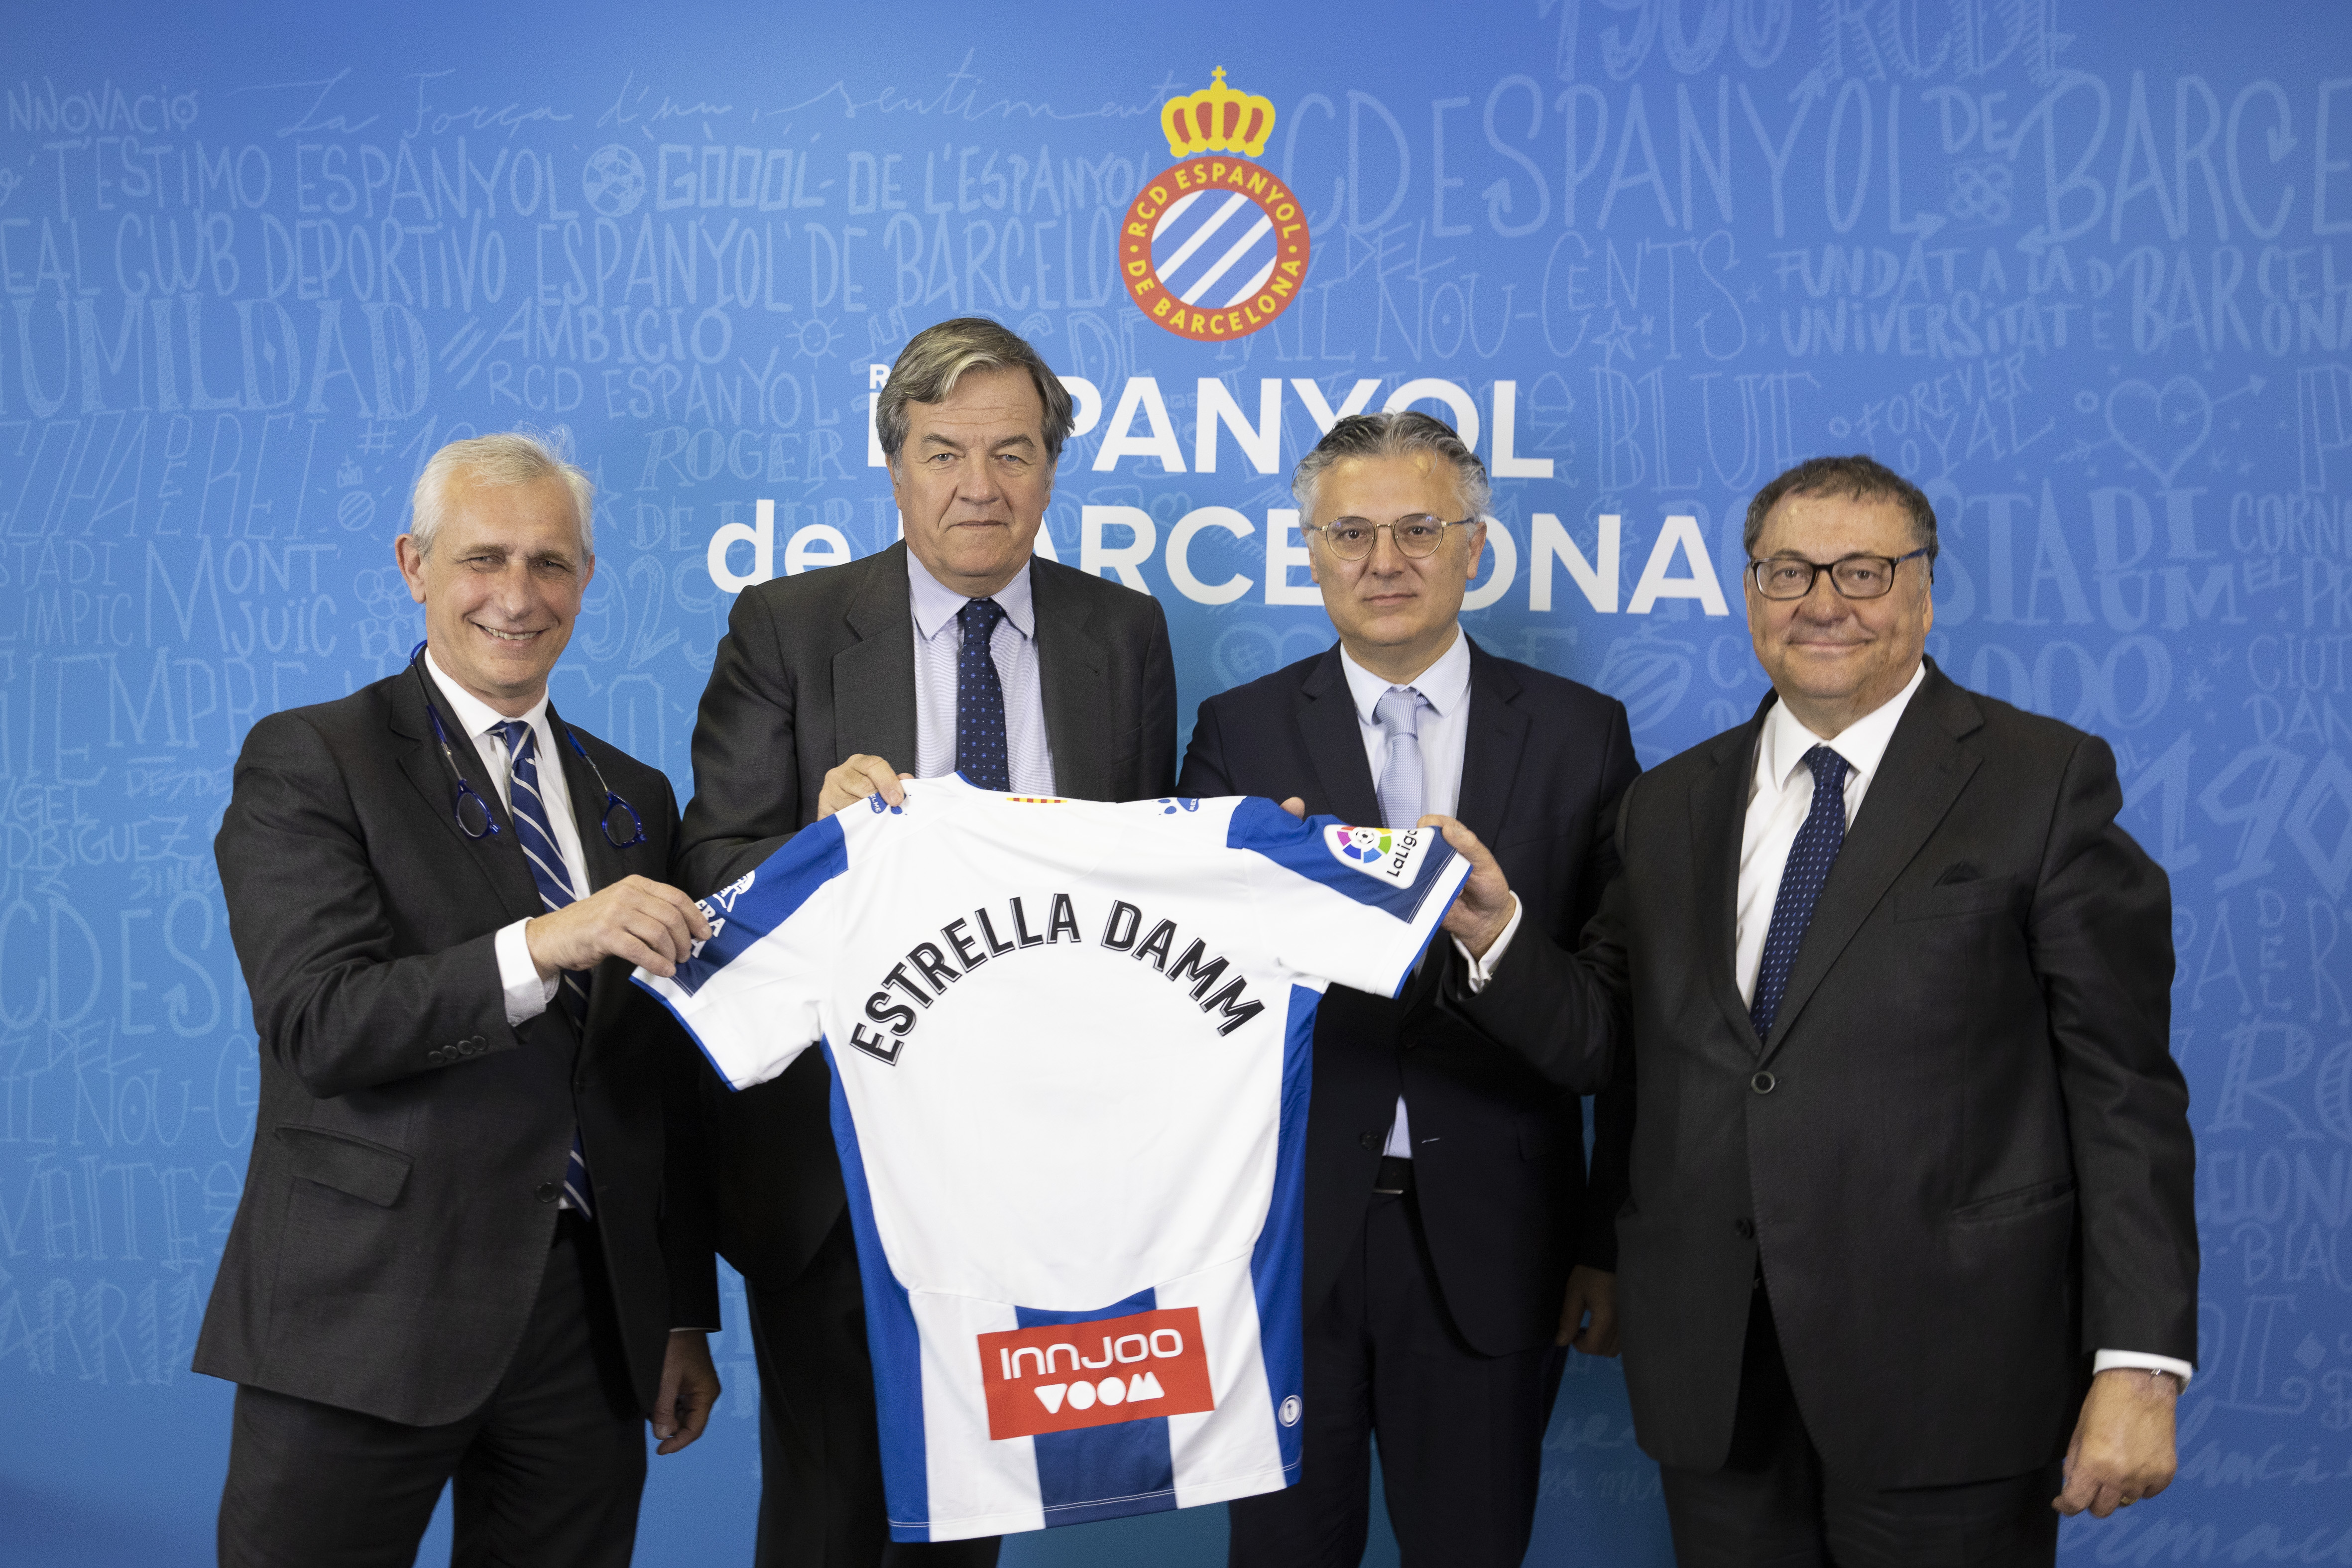 Estrella Damm y el RCD Espanyol de Barcelona renuevan hasta 2023